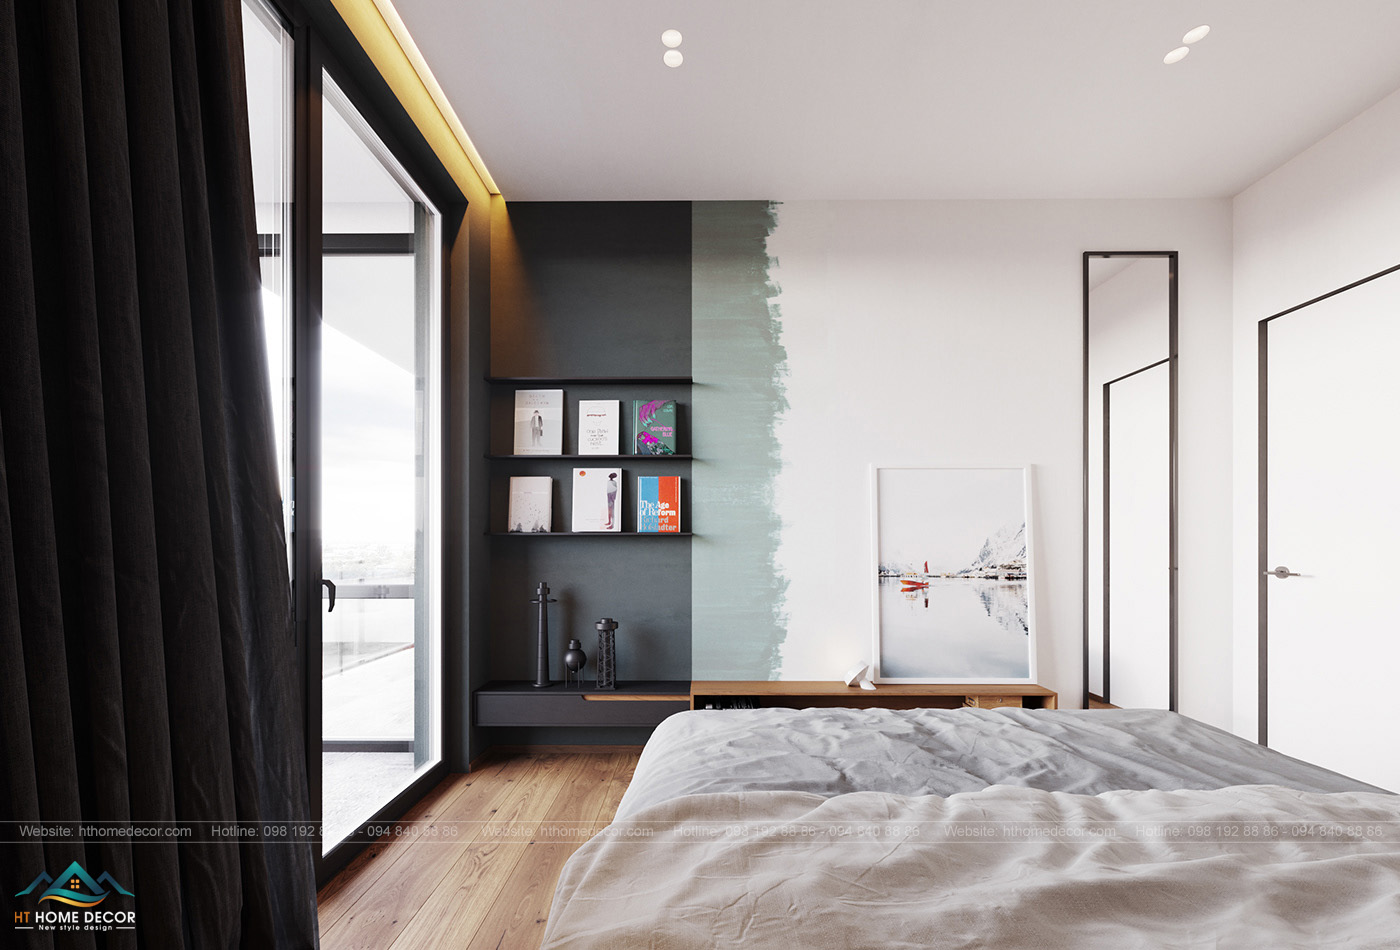 Tone phòng ngủ được lựa chọn làm các màu ghi xám từ đậm tới nhạt. Kiến trúc sư như một người họa sĩ tài ba. Vẽ lên nét đẹp tinh tế của nơi này.